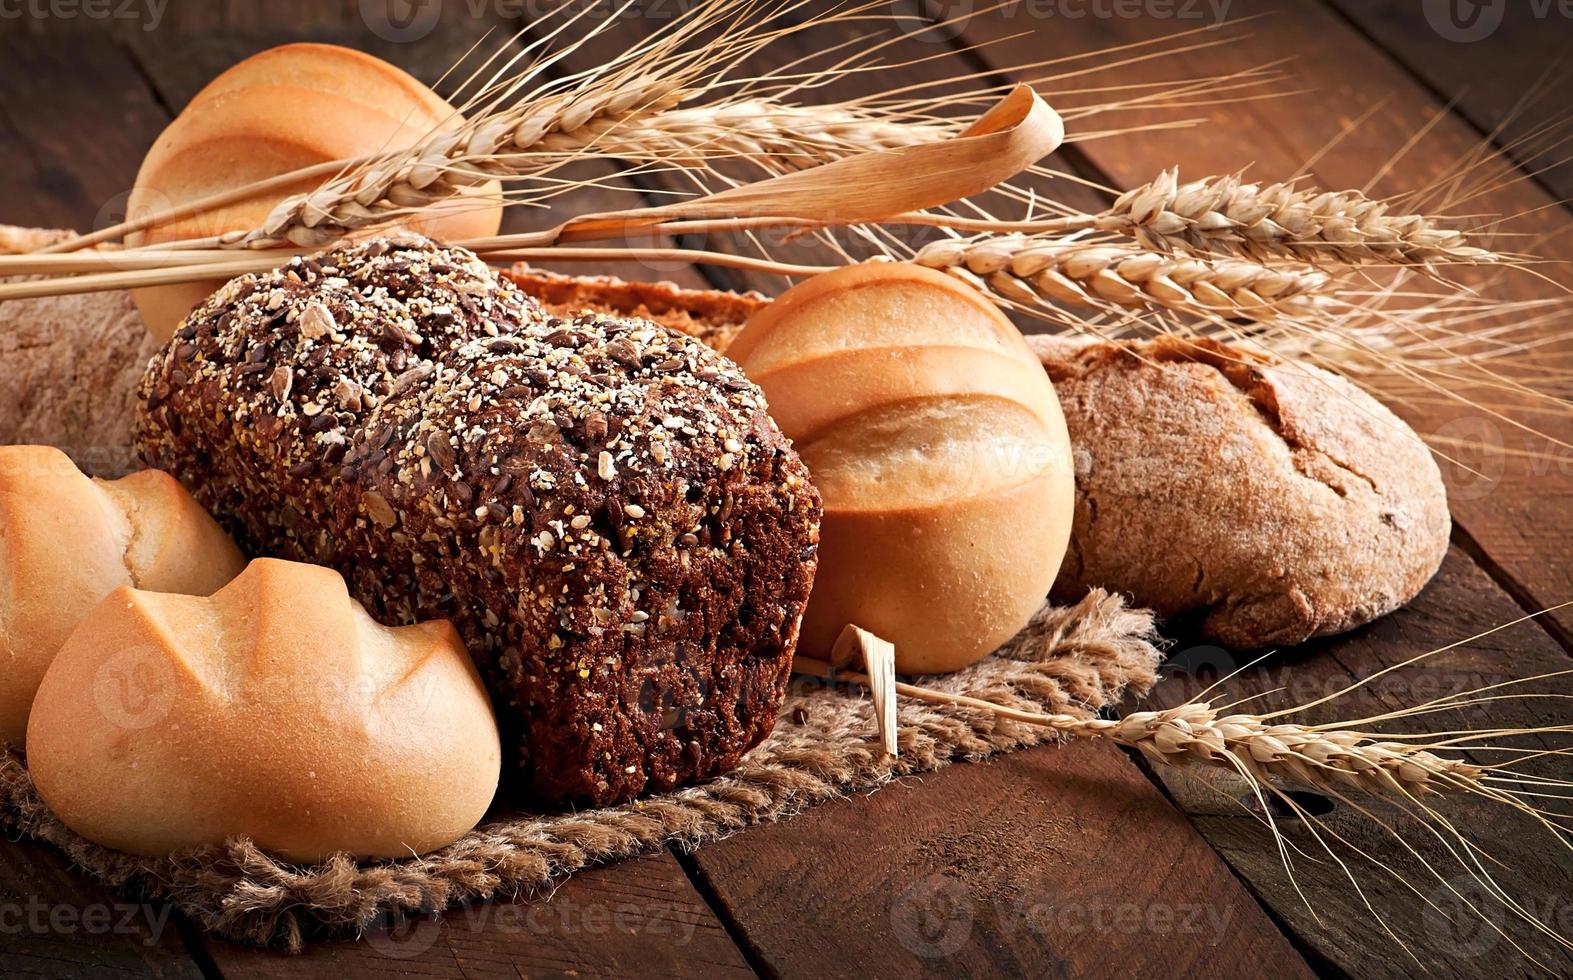 sortiment av bakat bröd på ett träbord foto